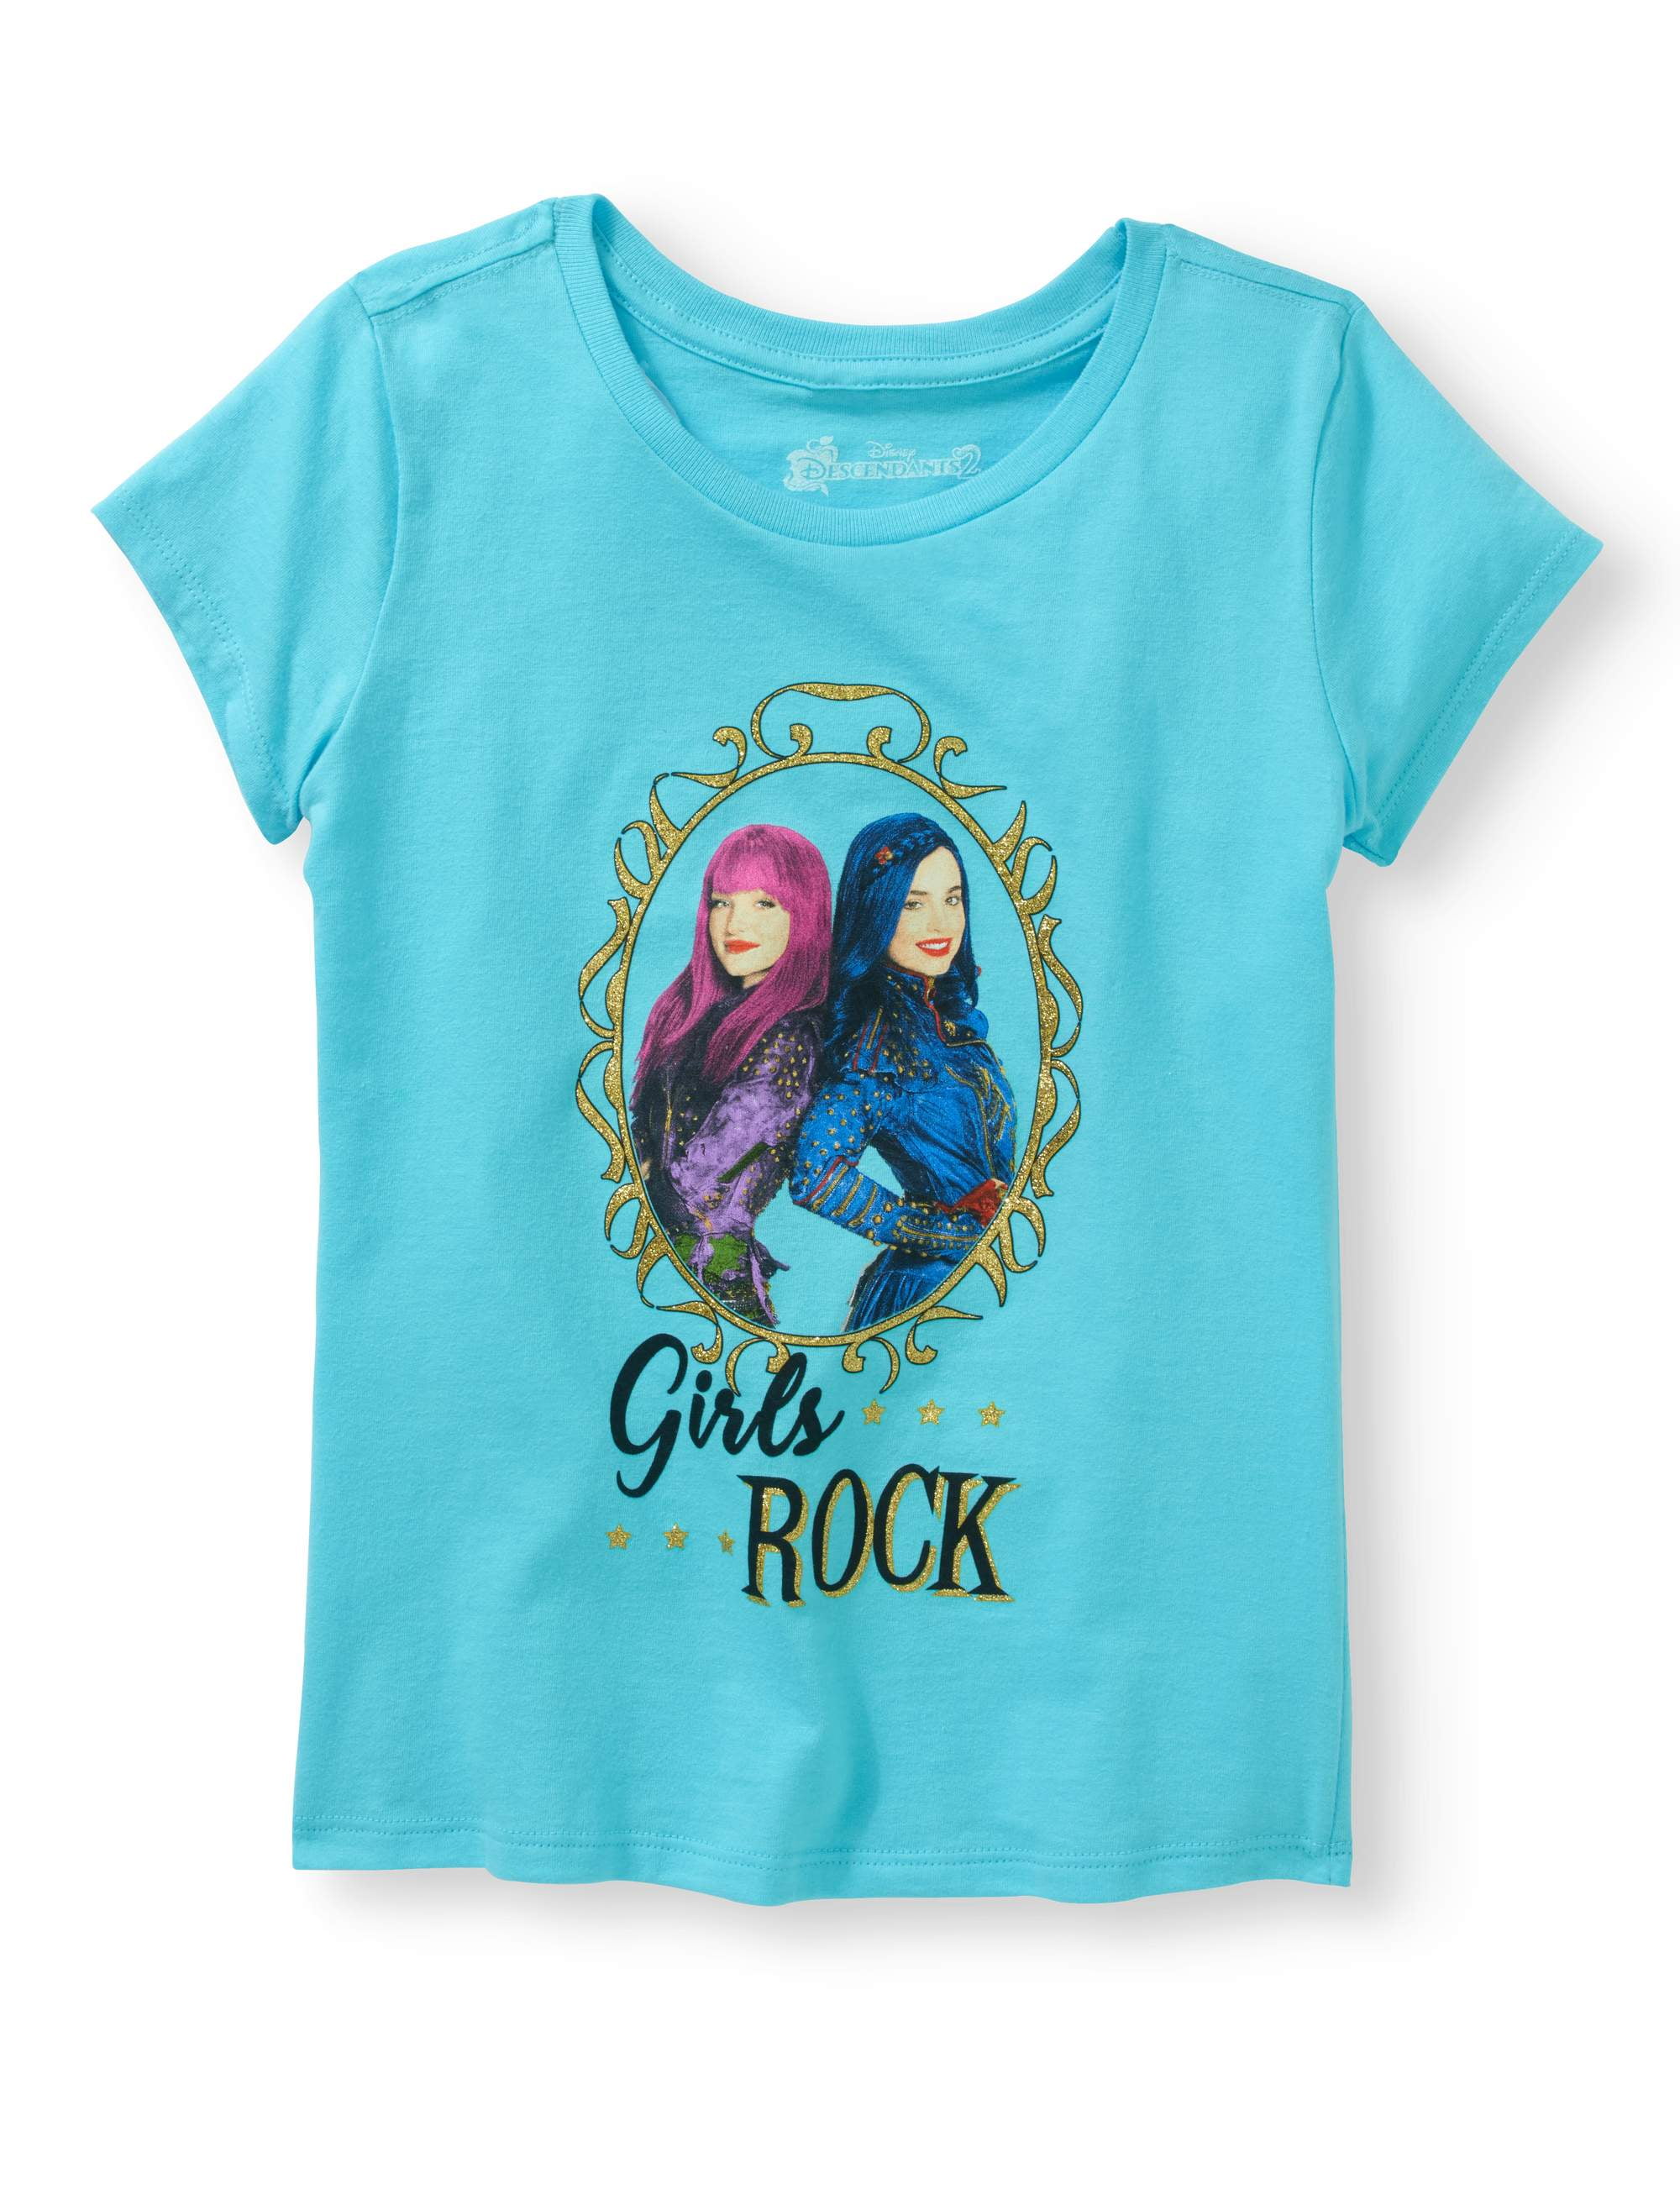 Girls Ss Folded Tee Shirt - Walmart.com